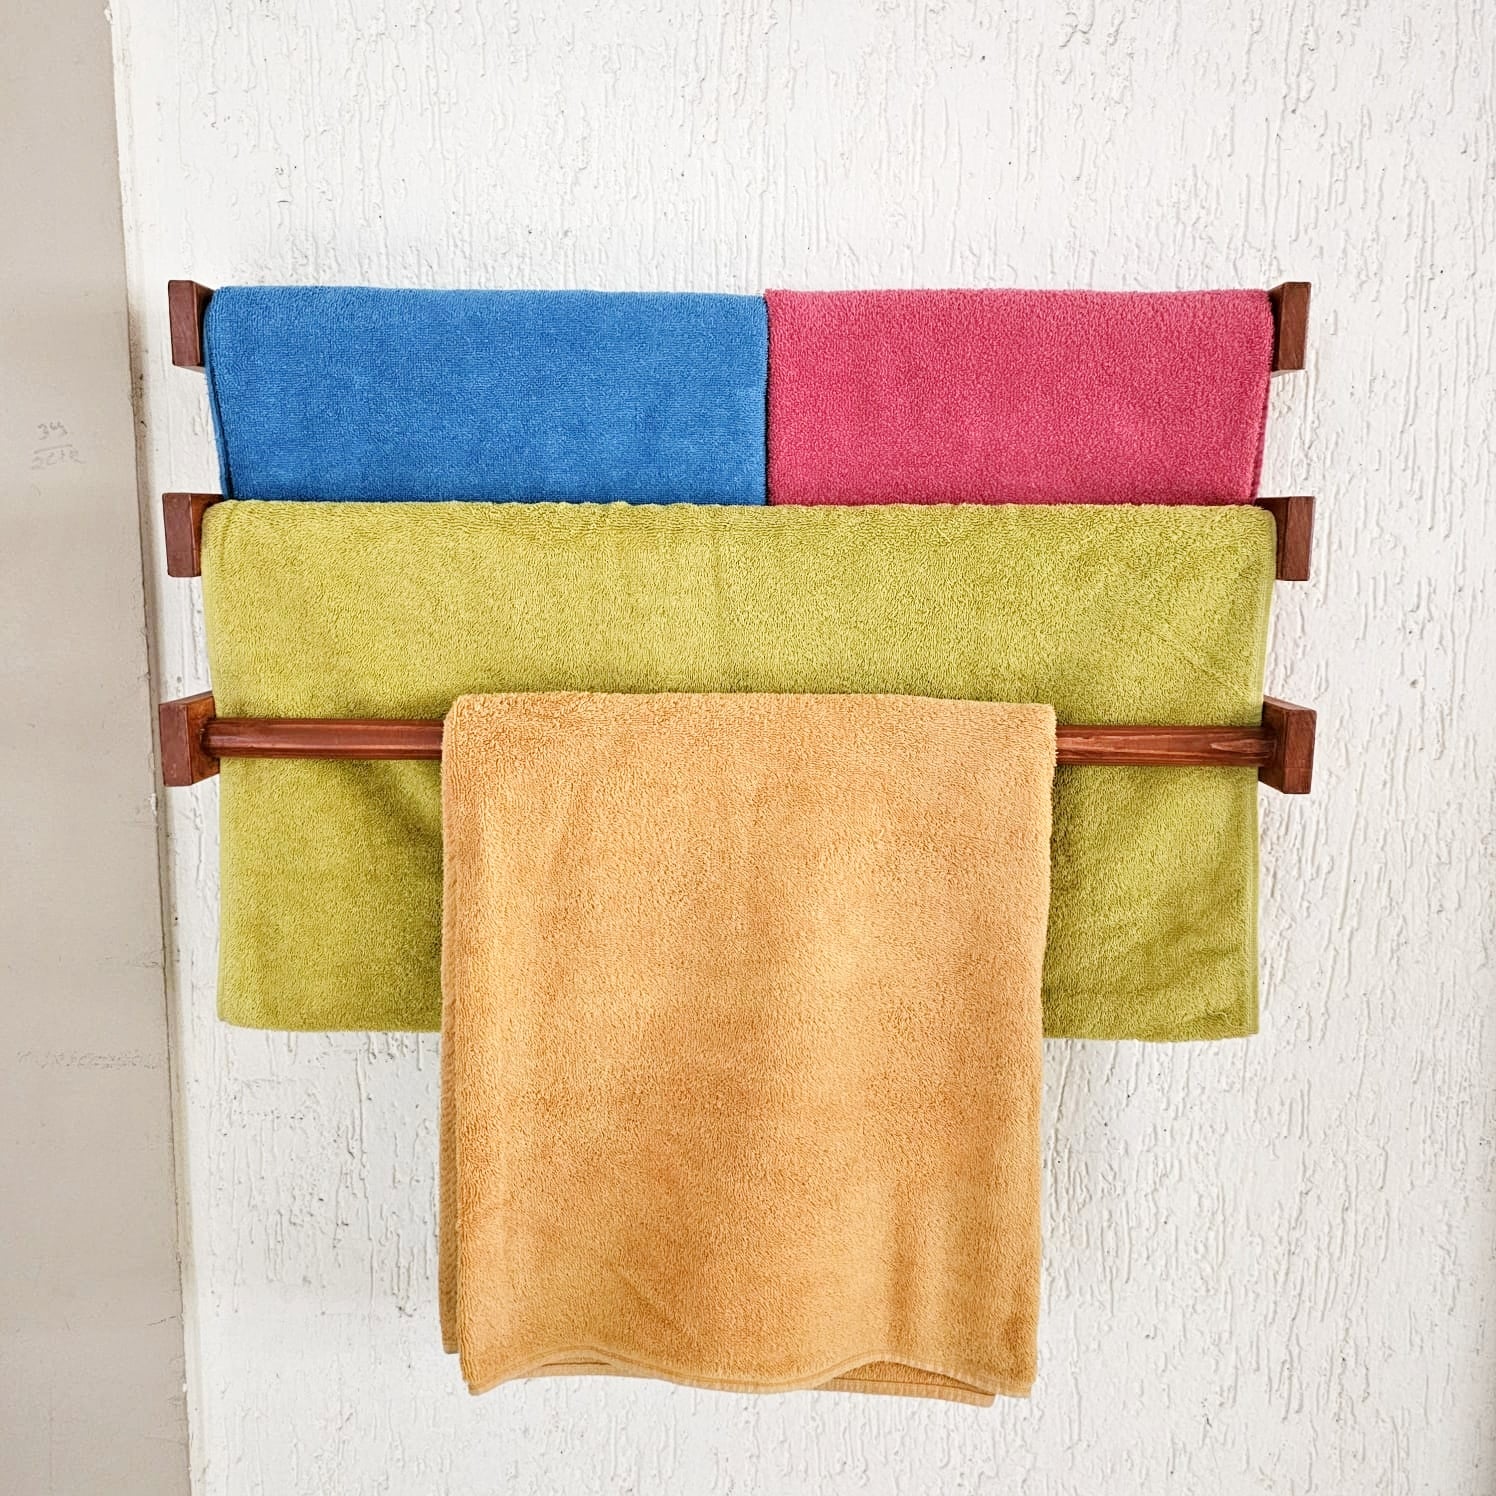 Towel Holder Large